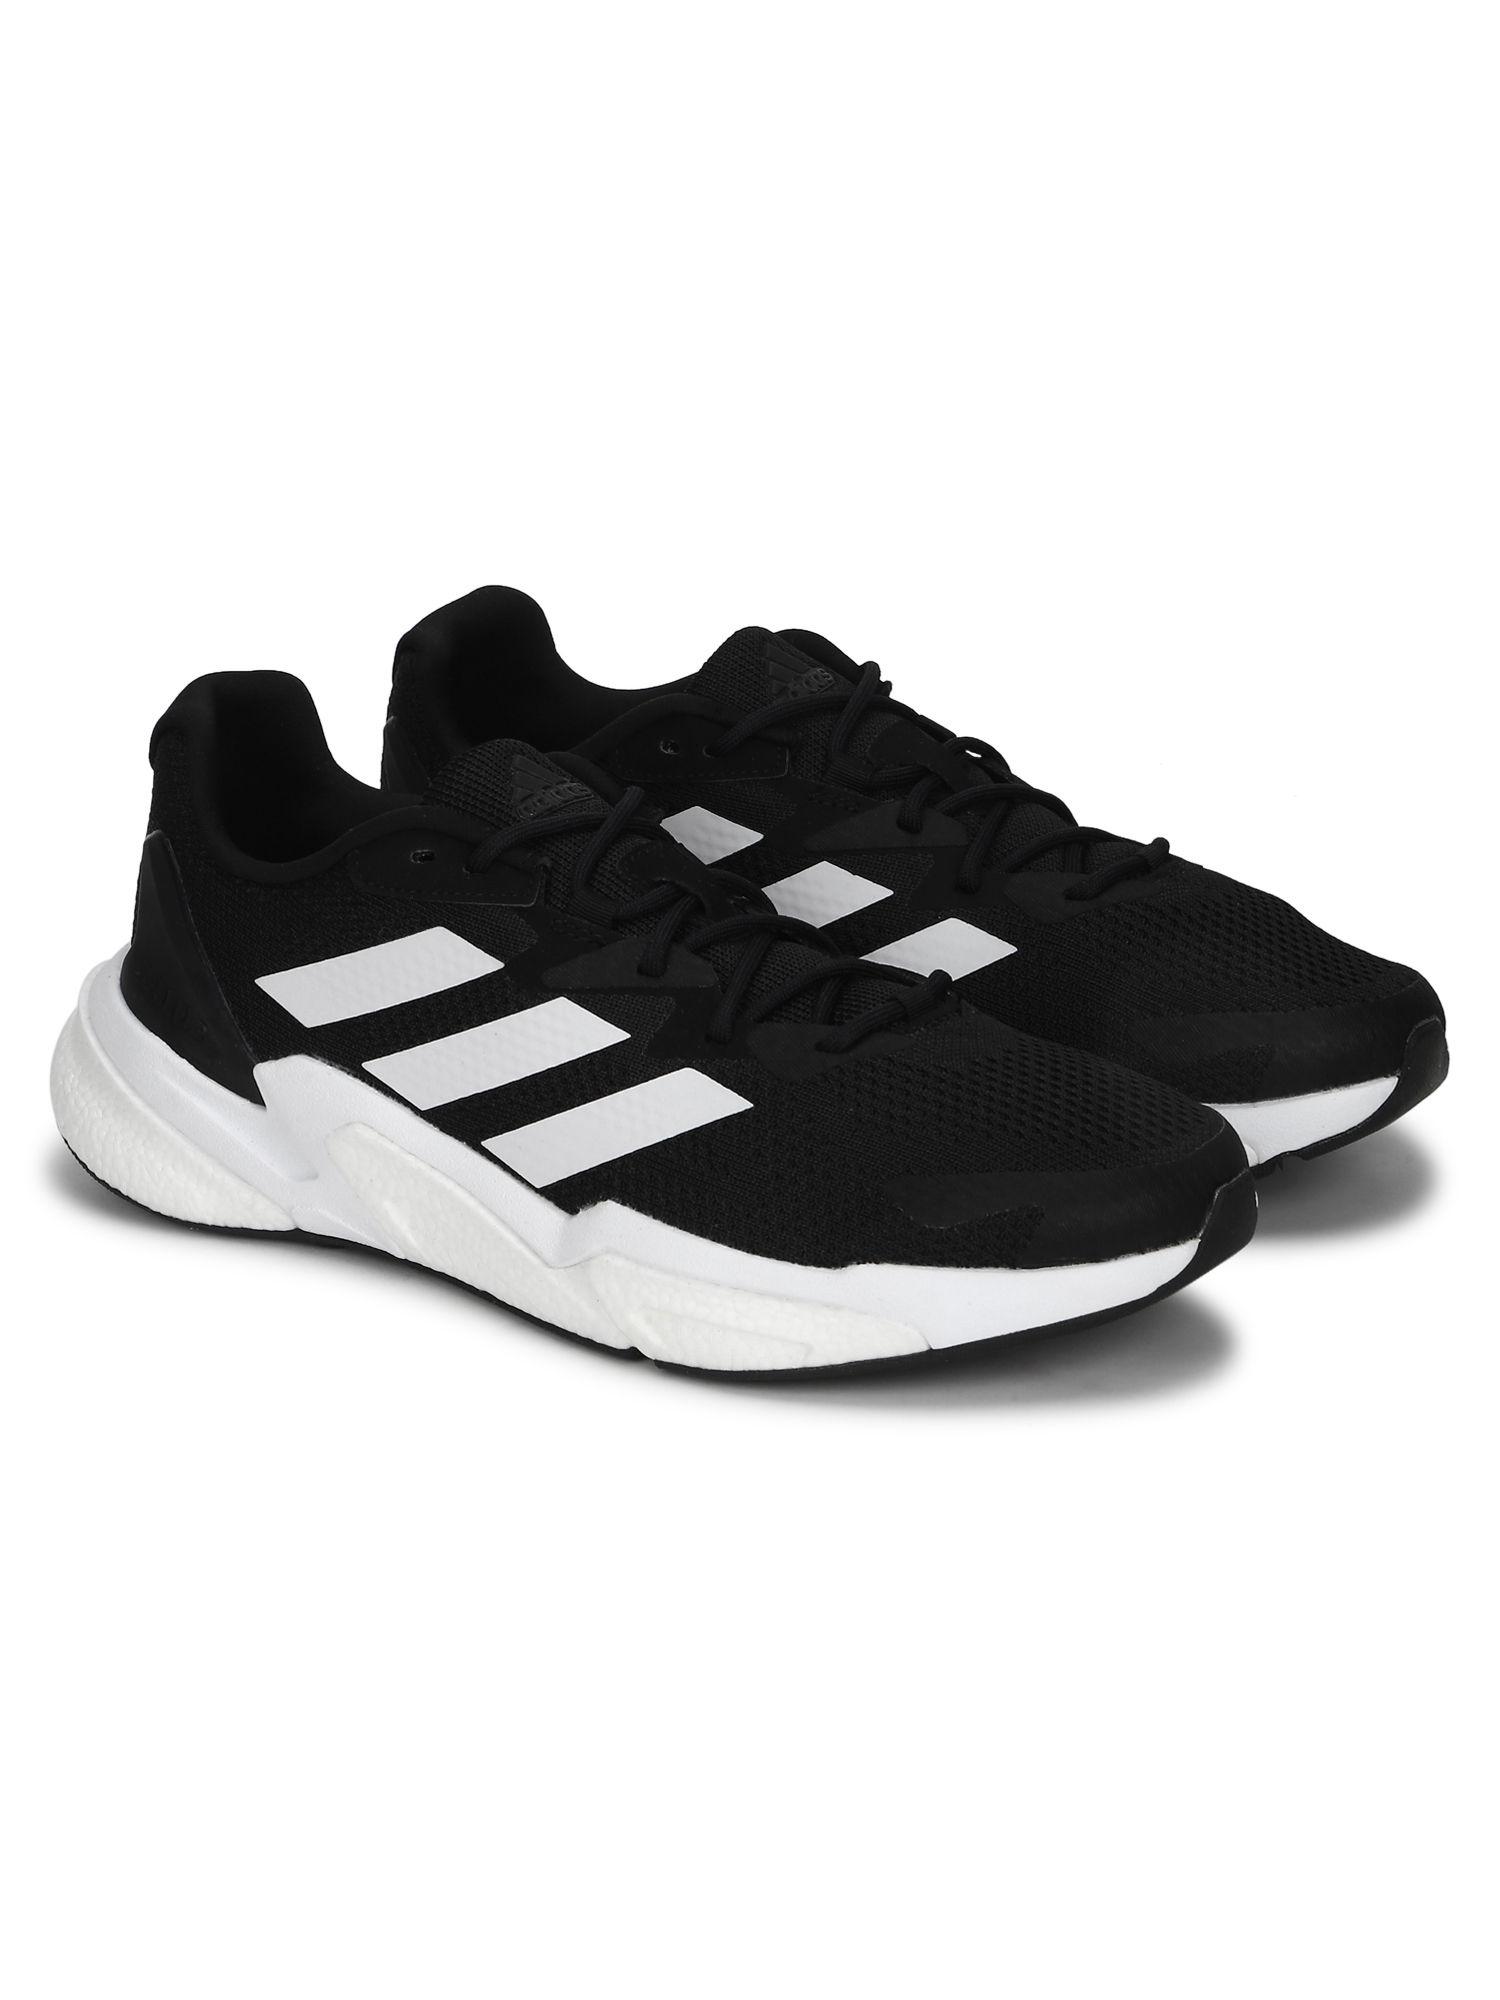 x9000l3 m black running shoes